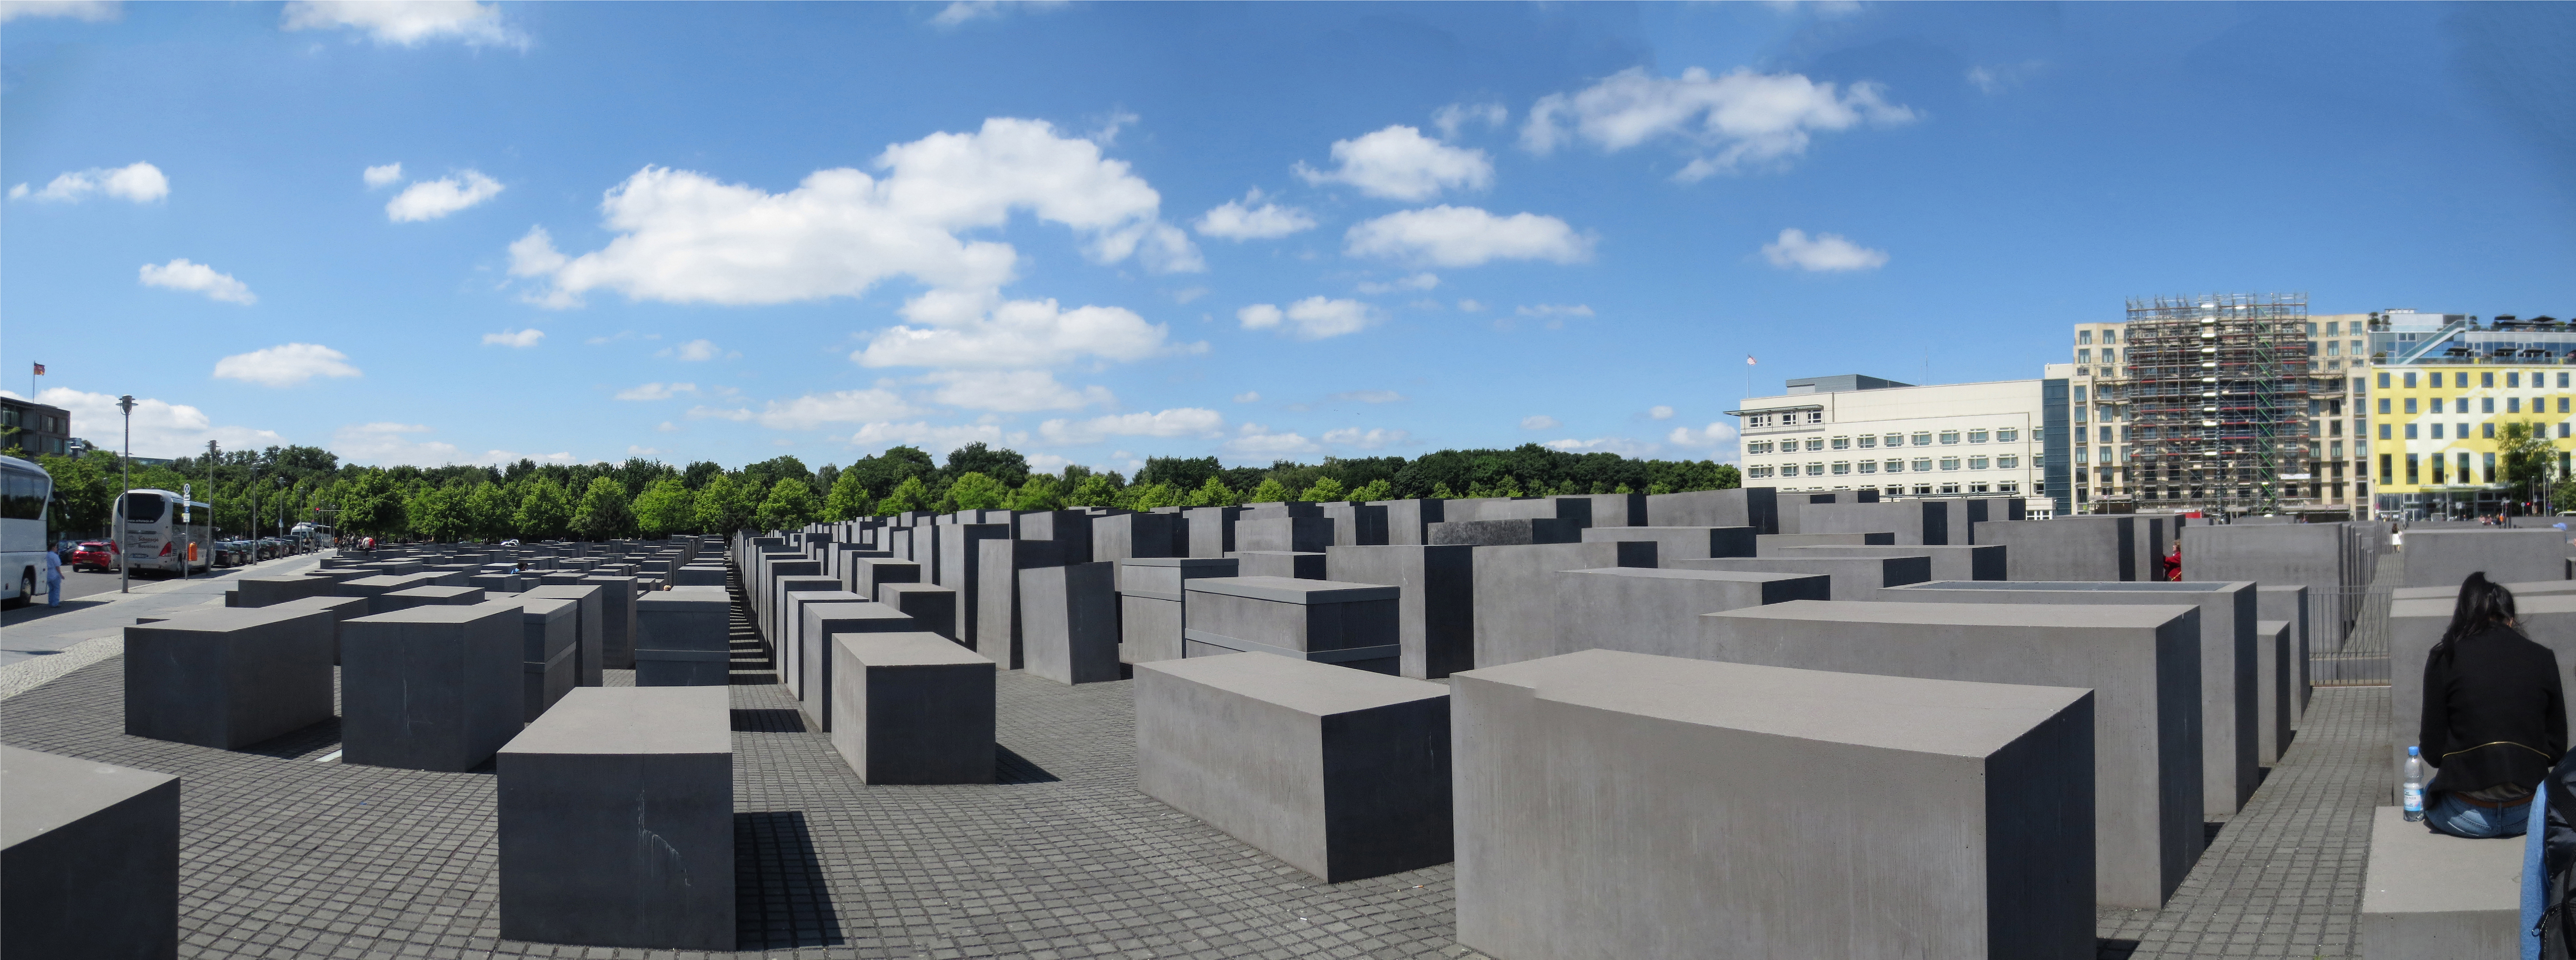 Monumento Del Holocausto Ficha Fotos Y Planos Wikiarquitectura